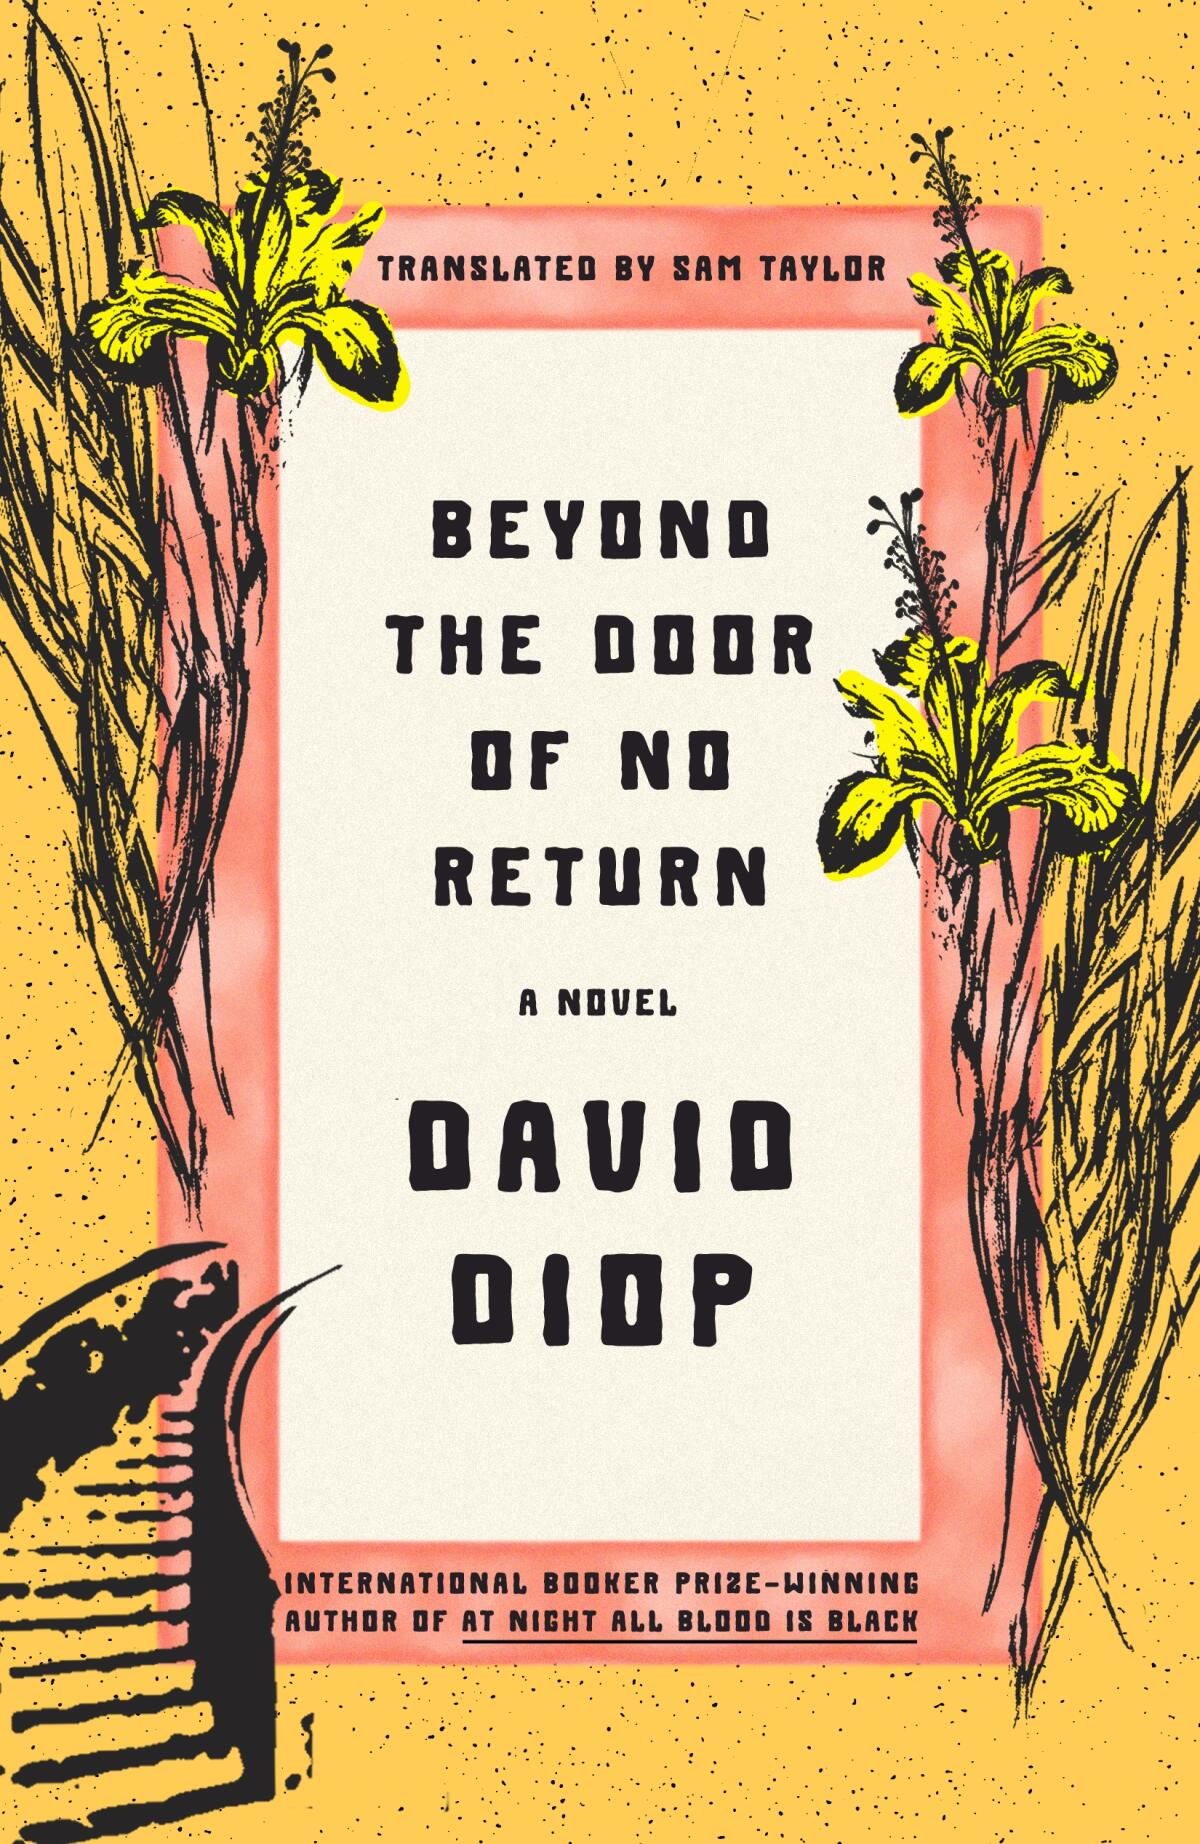 "Beyond the Door of No Return," by David Diop